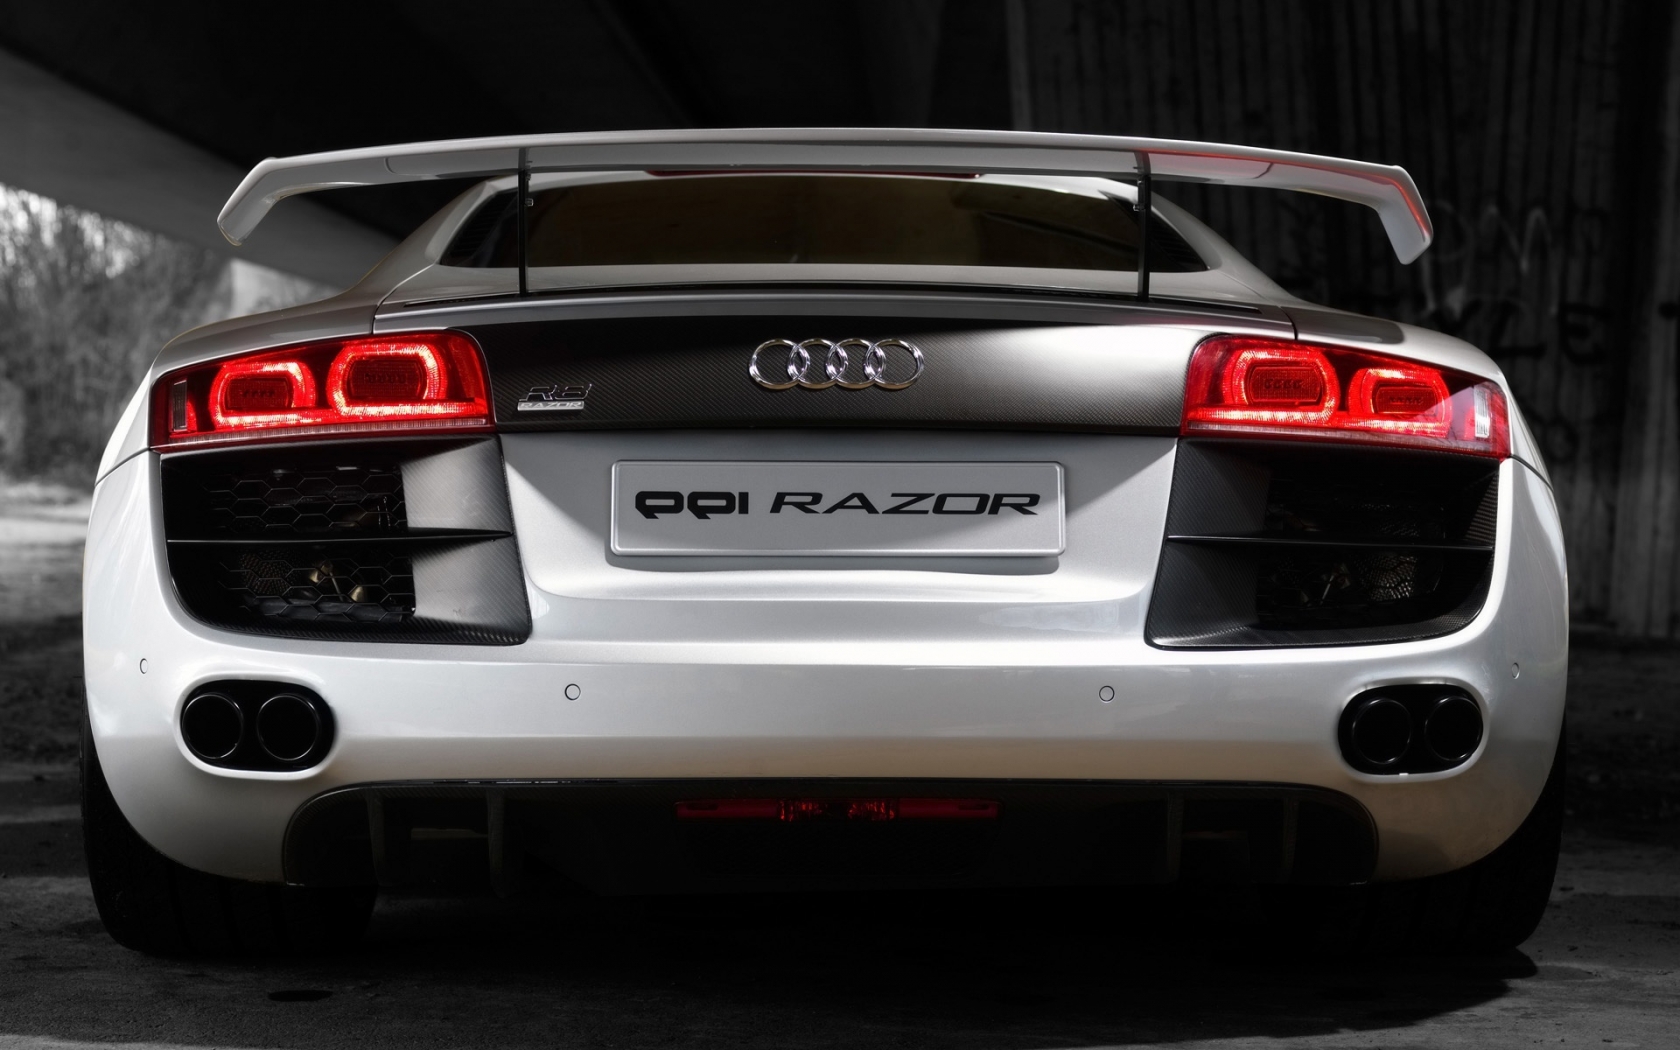 2008 PPI Audi R8 Razor Rear for 1680 x 1050 widescreen resolution